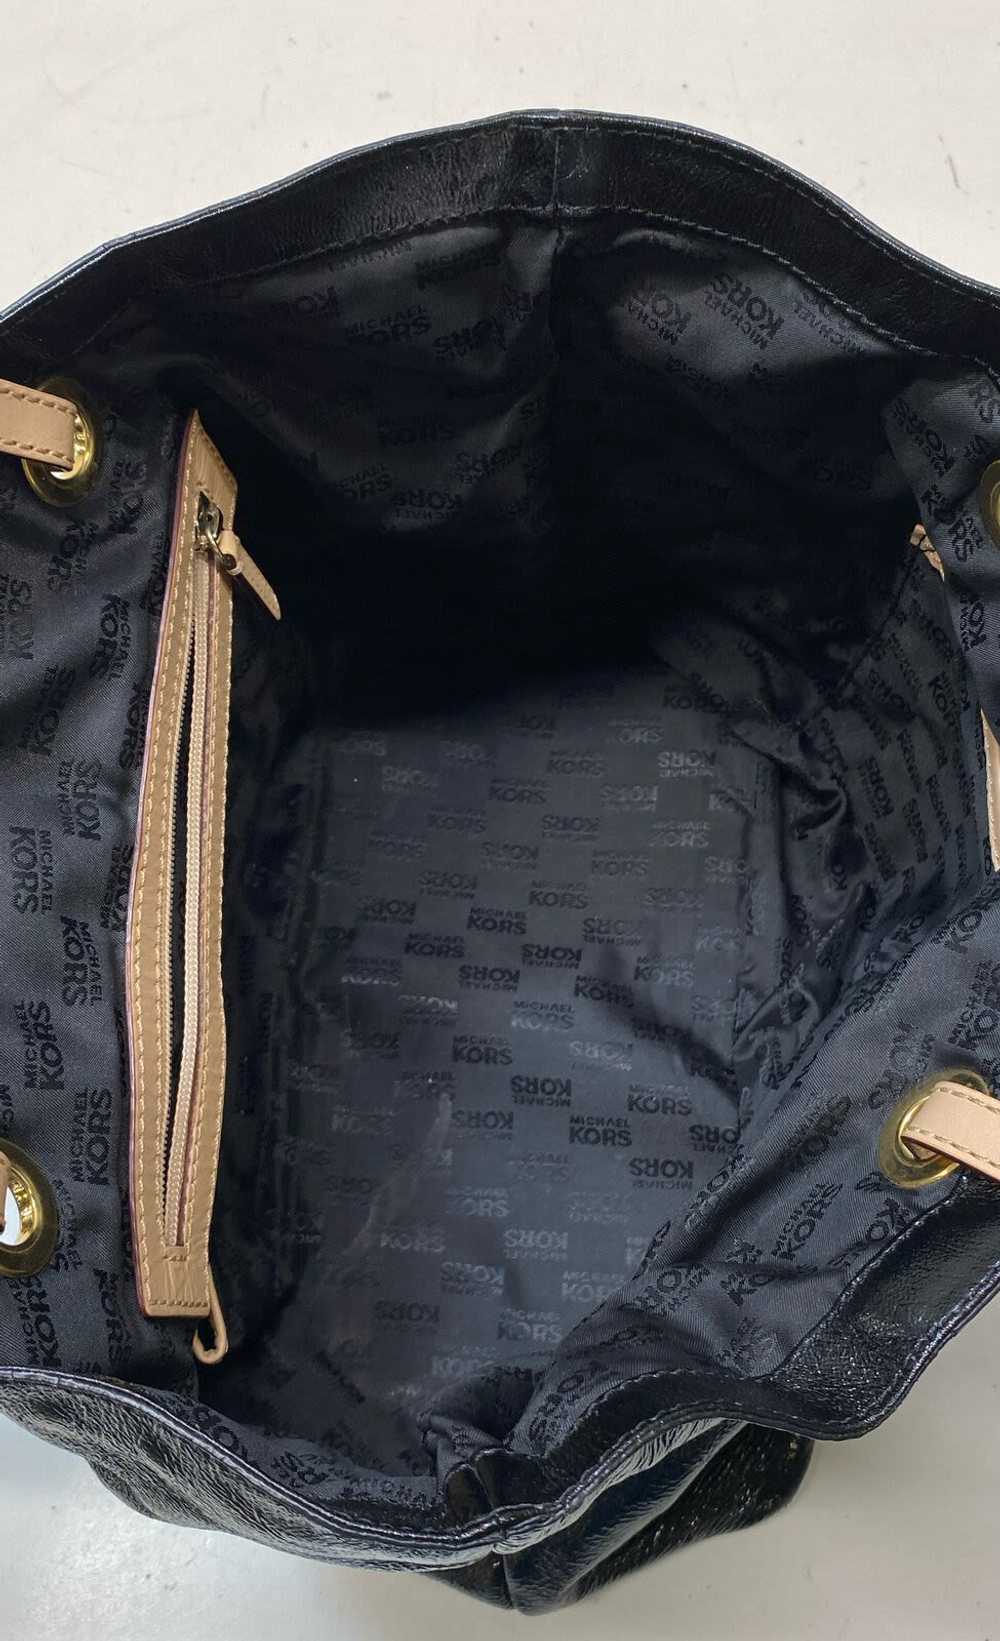 Michael Kors Pebbled Black Shoulder Bag - image 5